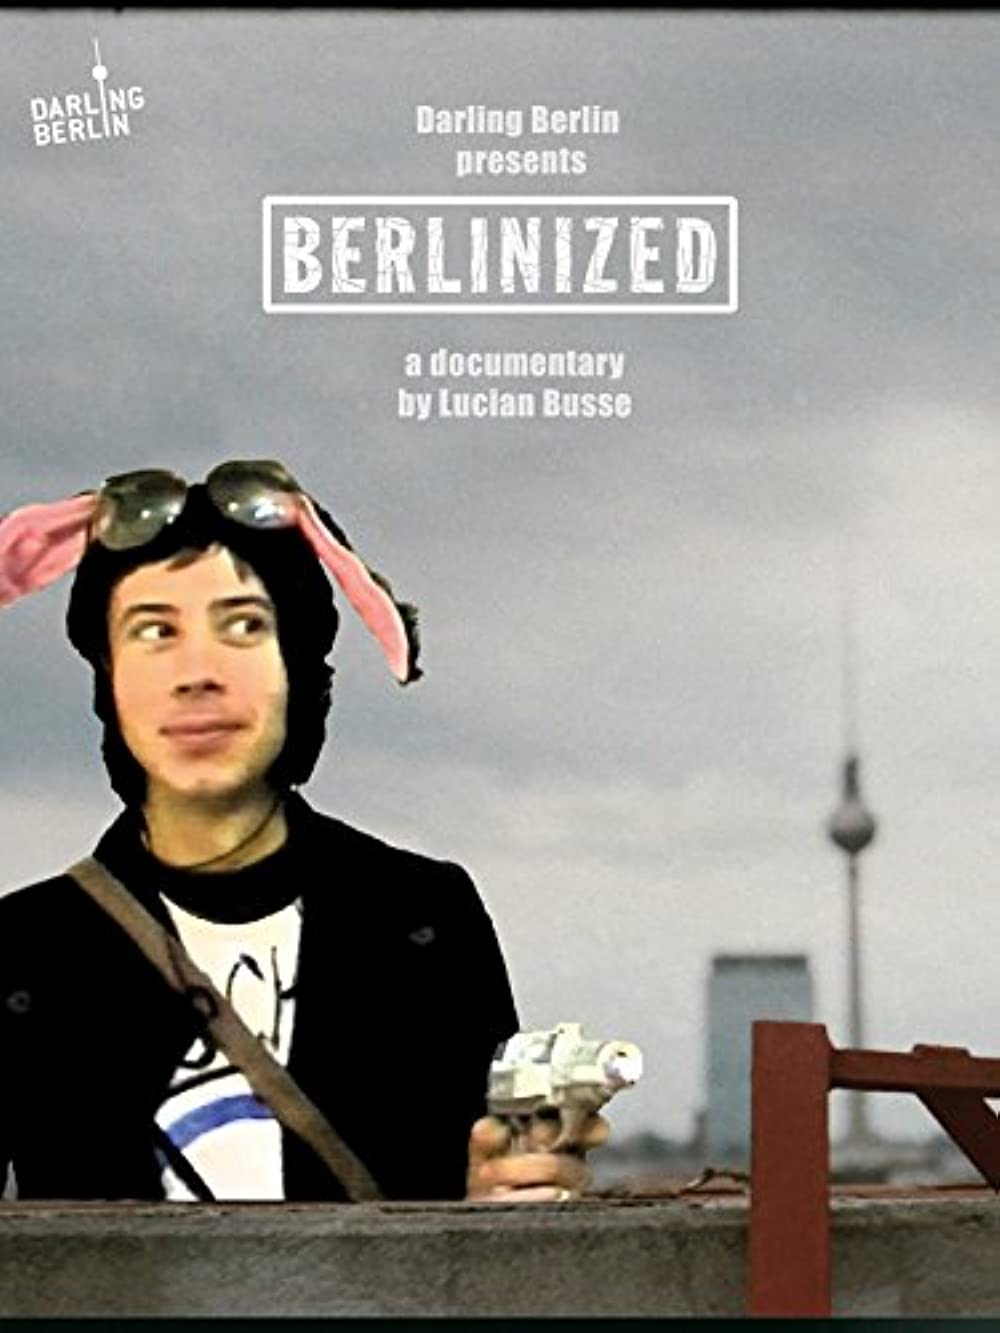 Filmbeschreibung zu Berlinized (OV)